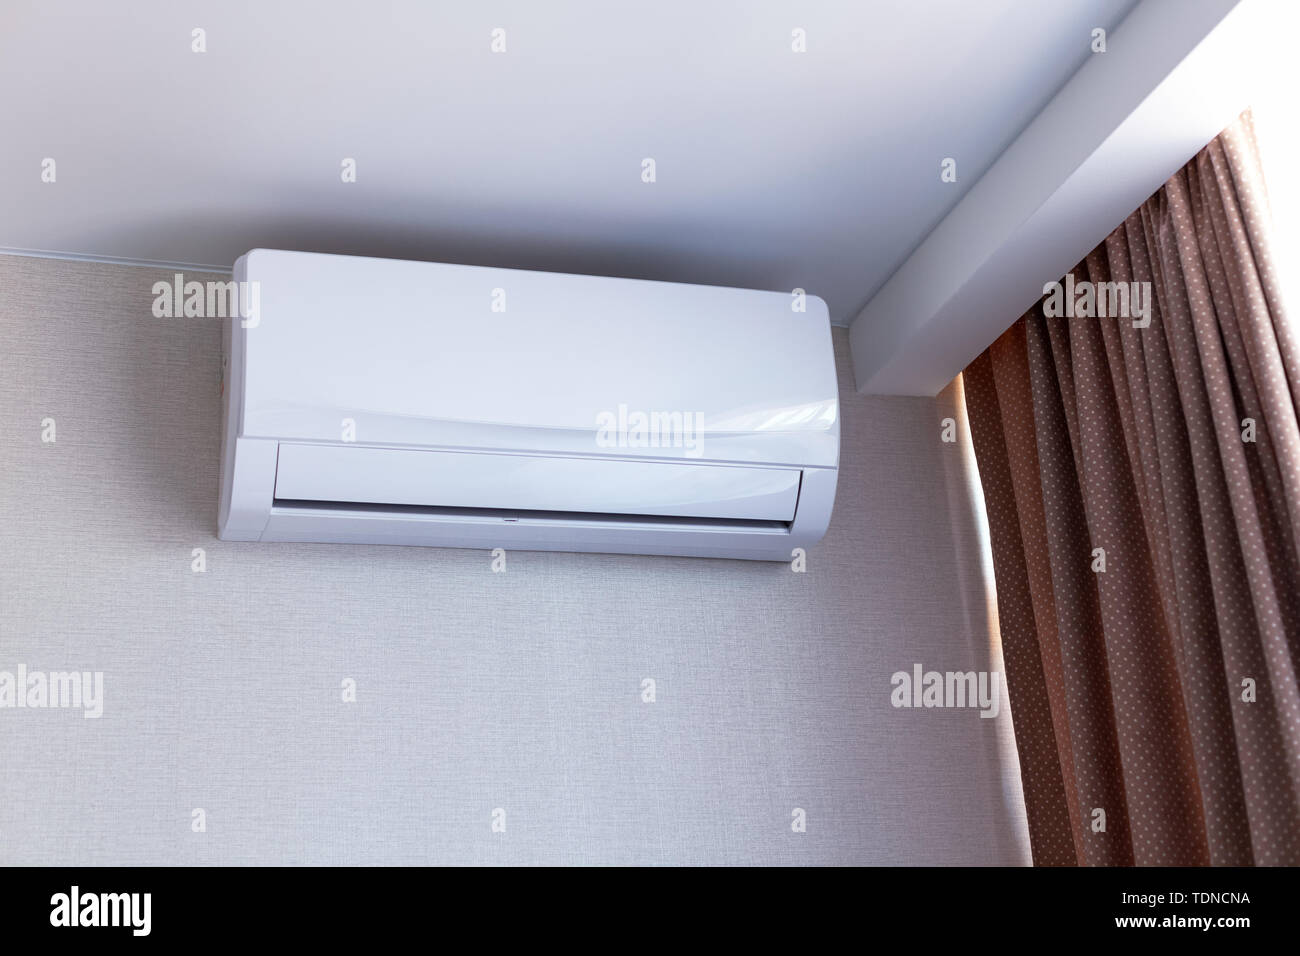 Kleine Klimaanlage an der Wand im Zimmer in der Wohnung, ausgeschaltet.  Interieur in ruhigen Beigetönen Stockfotografie - Alamy